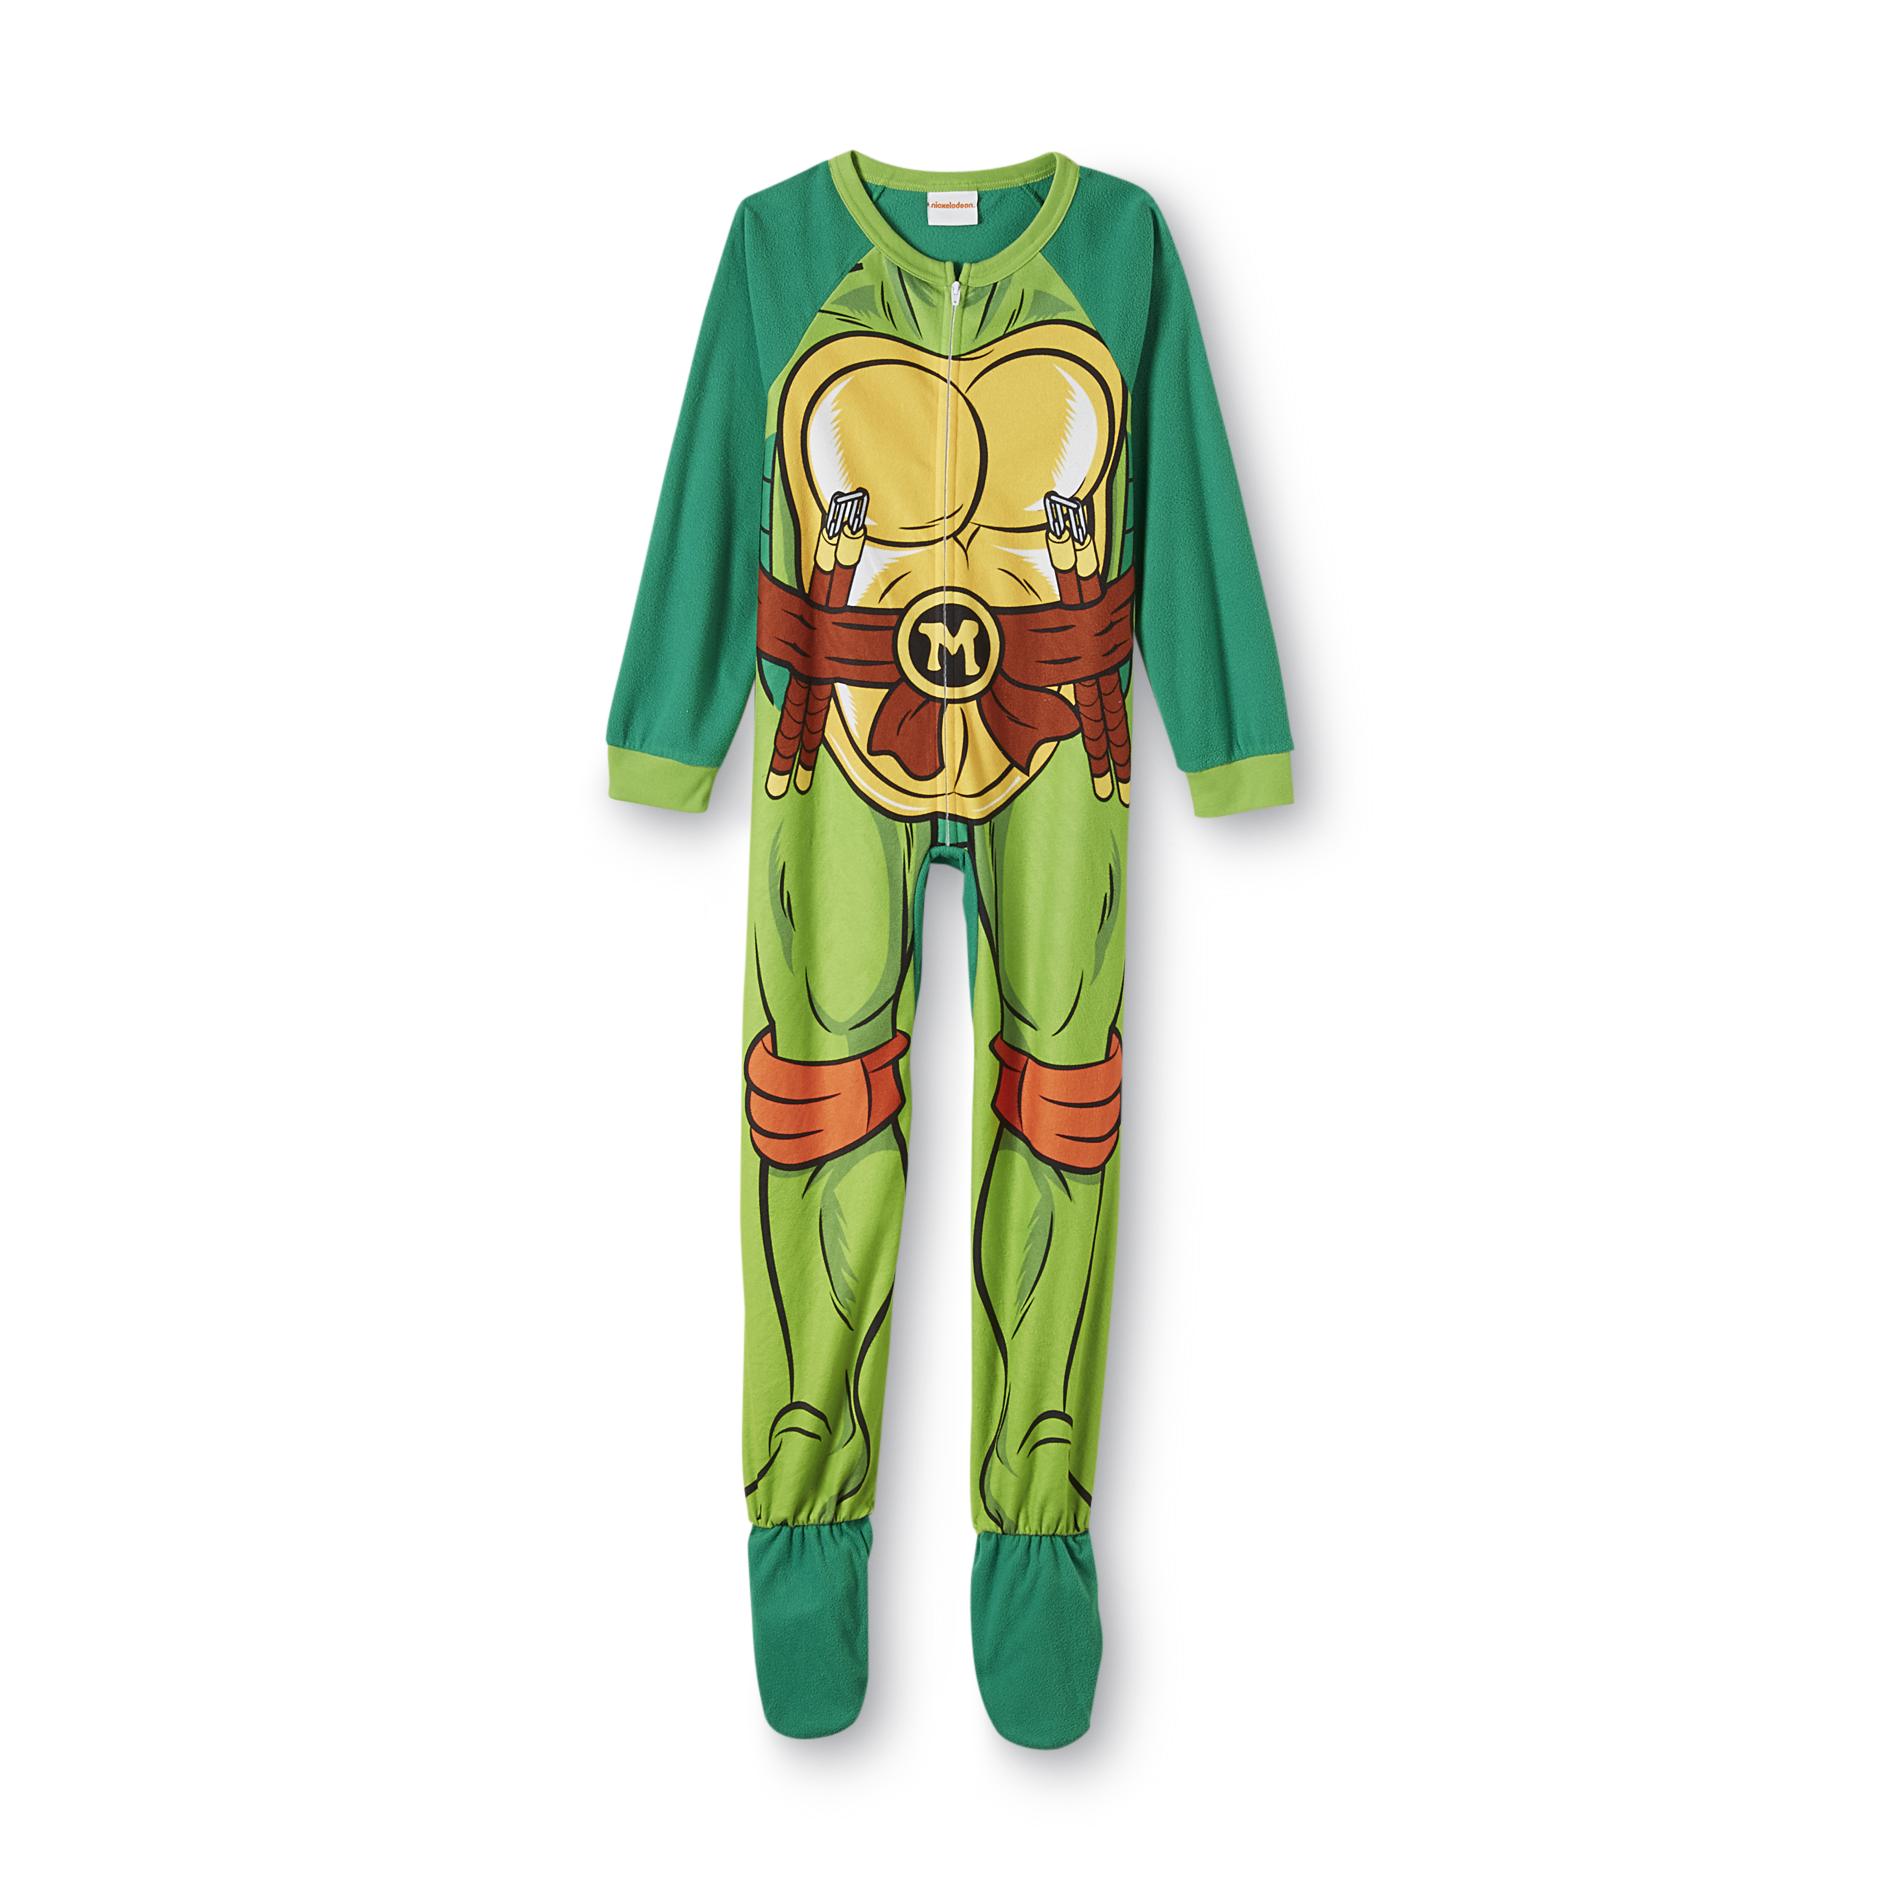 Nickelodeon Teenage Mutant Ninja Turtles Boy's Footed Sleeper Pajamas - Michelangelo